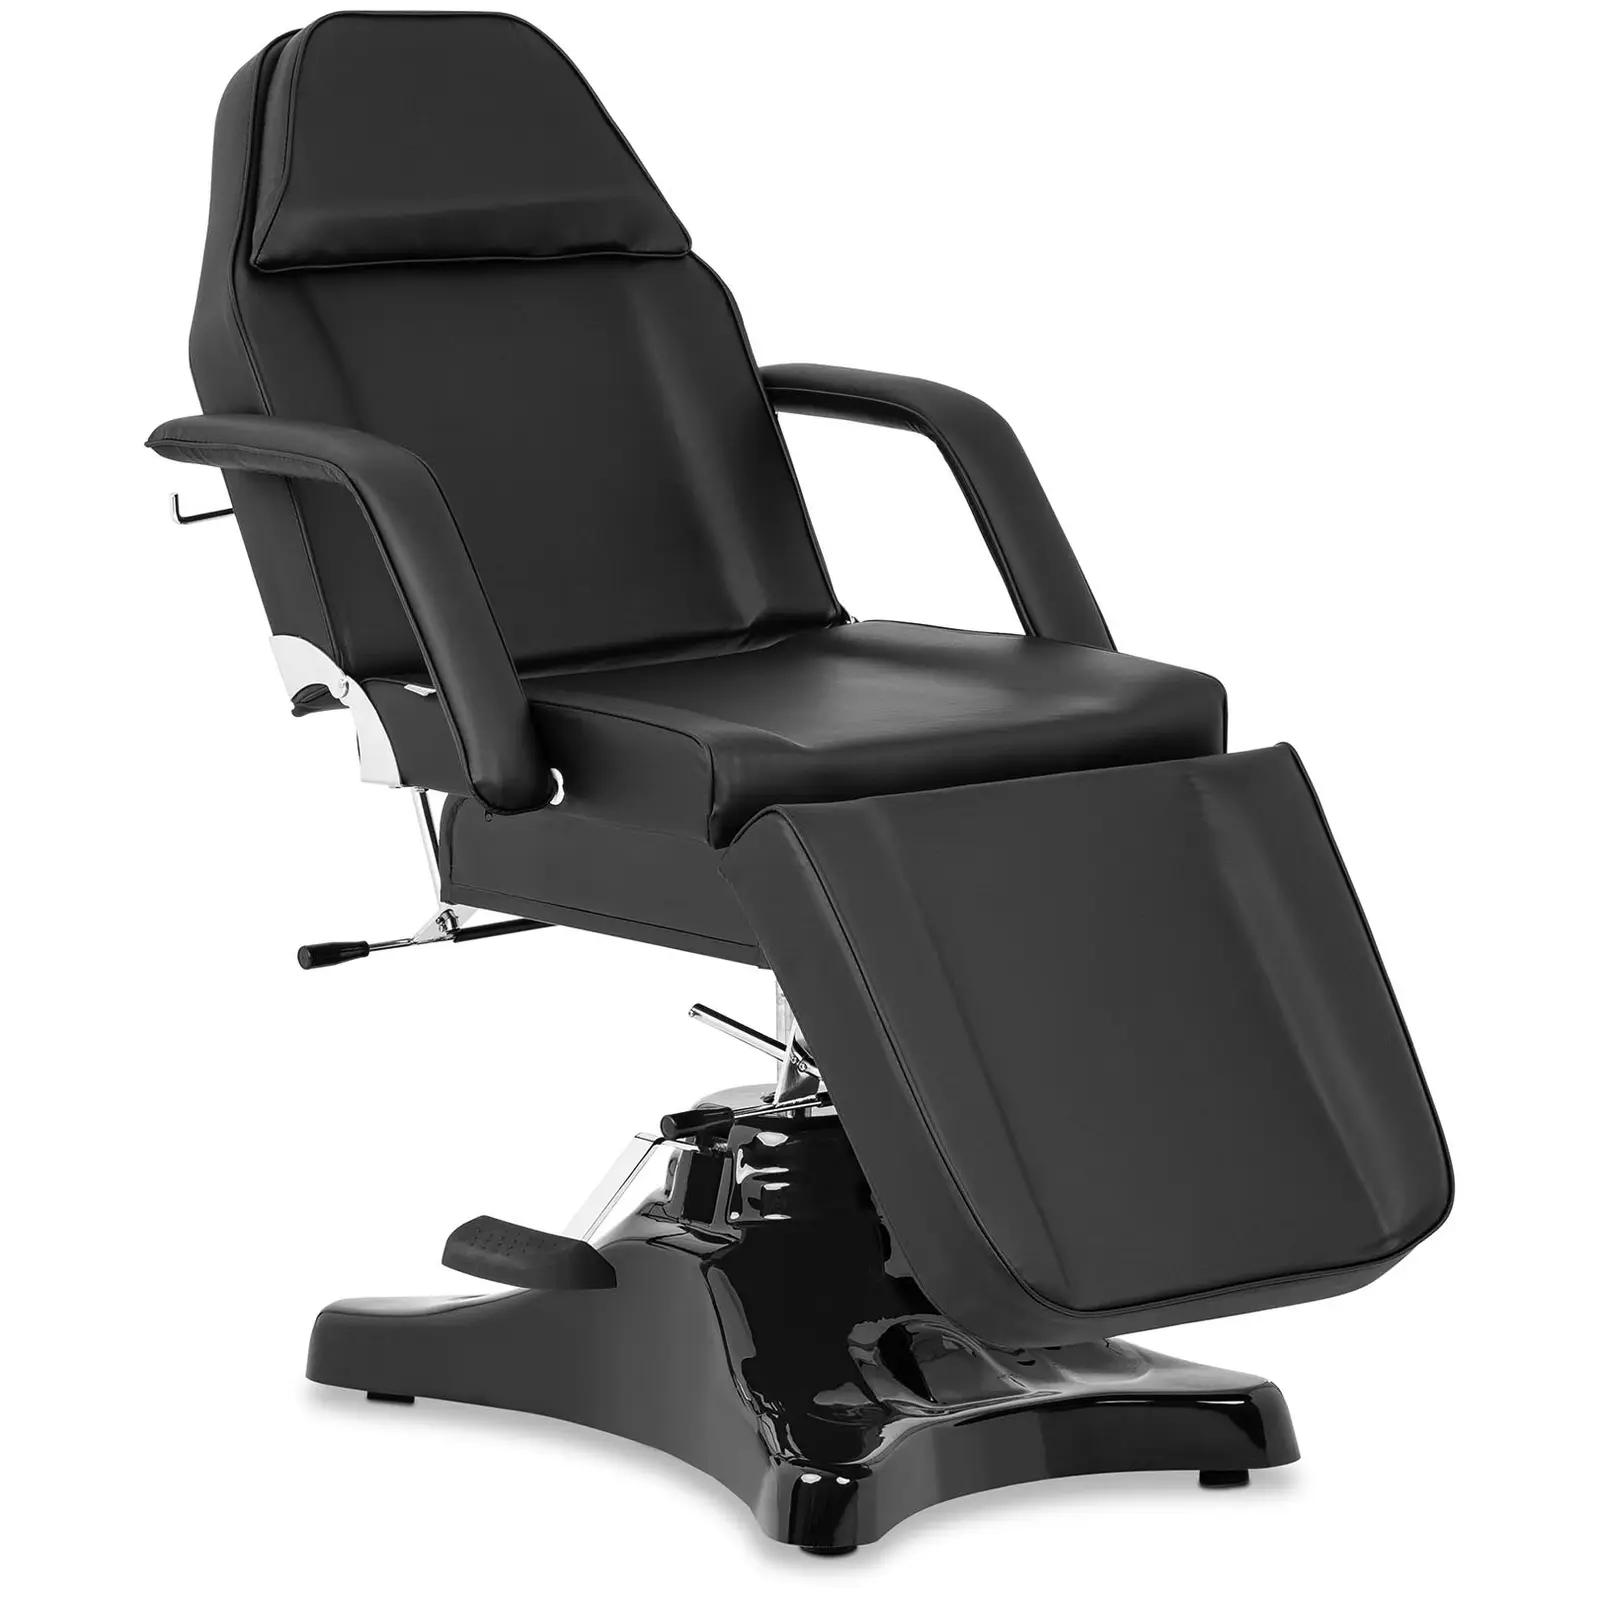 Cadeira para cosmética - 185 x 81 x 140 cm - 200 kg - Black